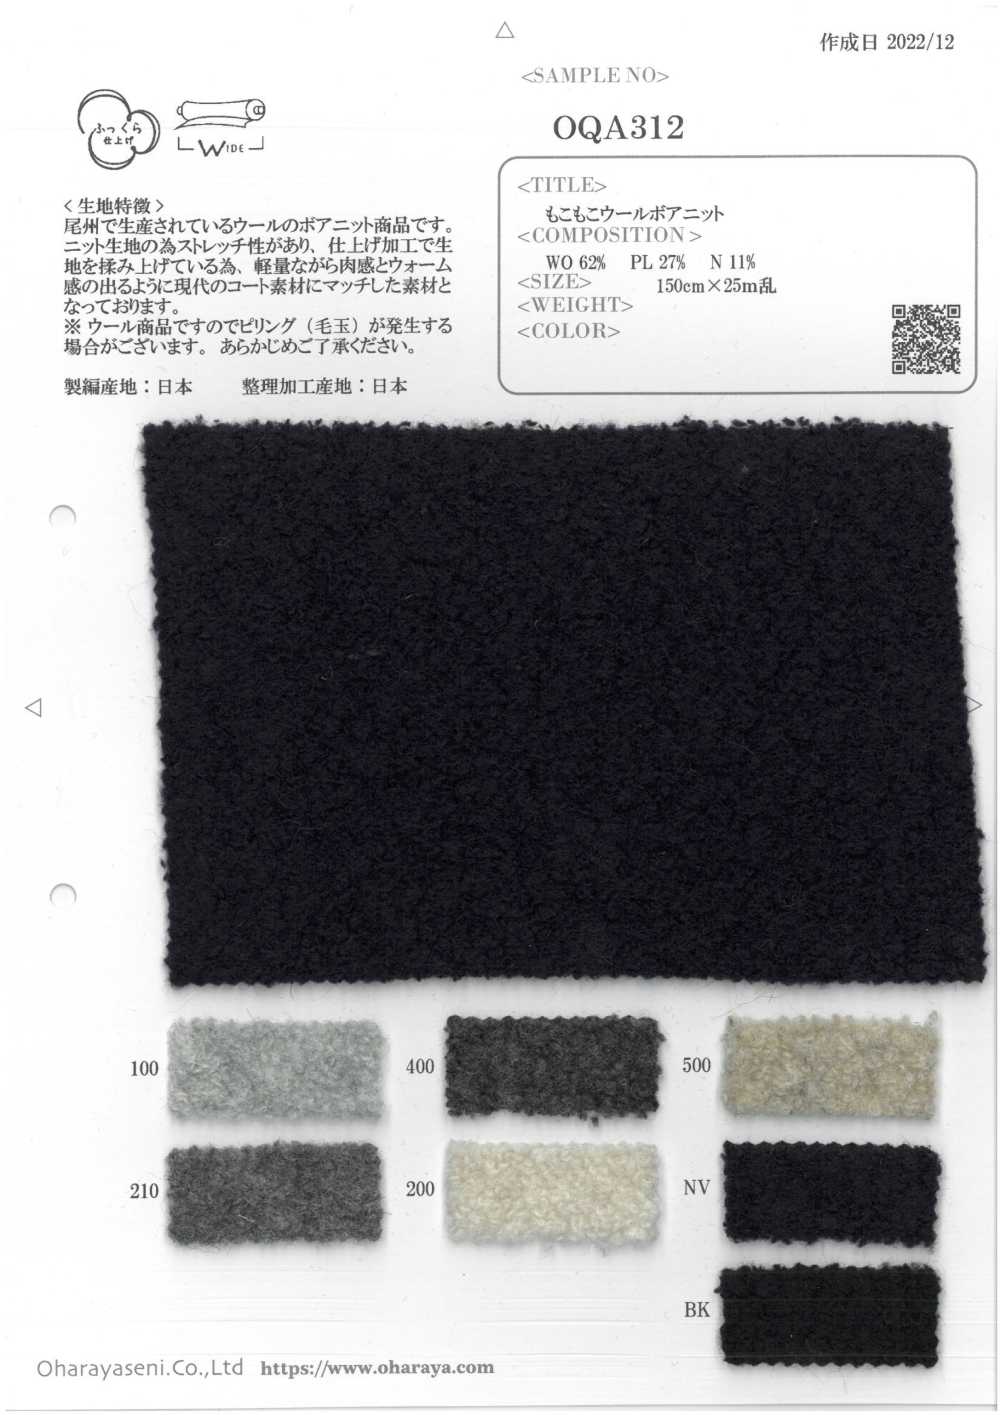 OQA312 Tricot Boa En Laine Moelleuse[Fabrication De Textile] Oharayaseni